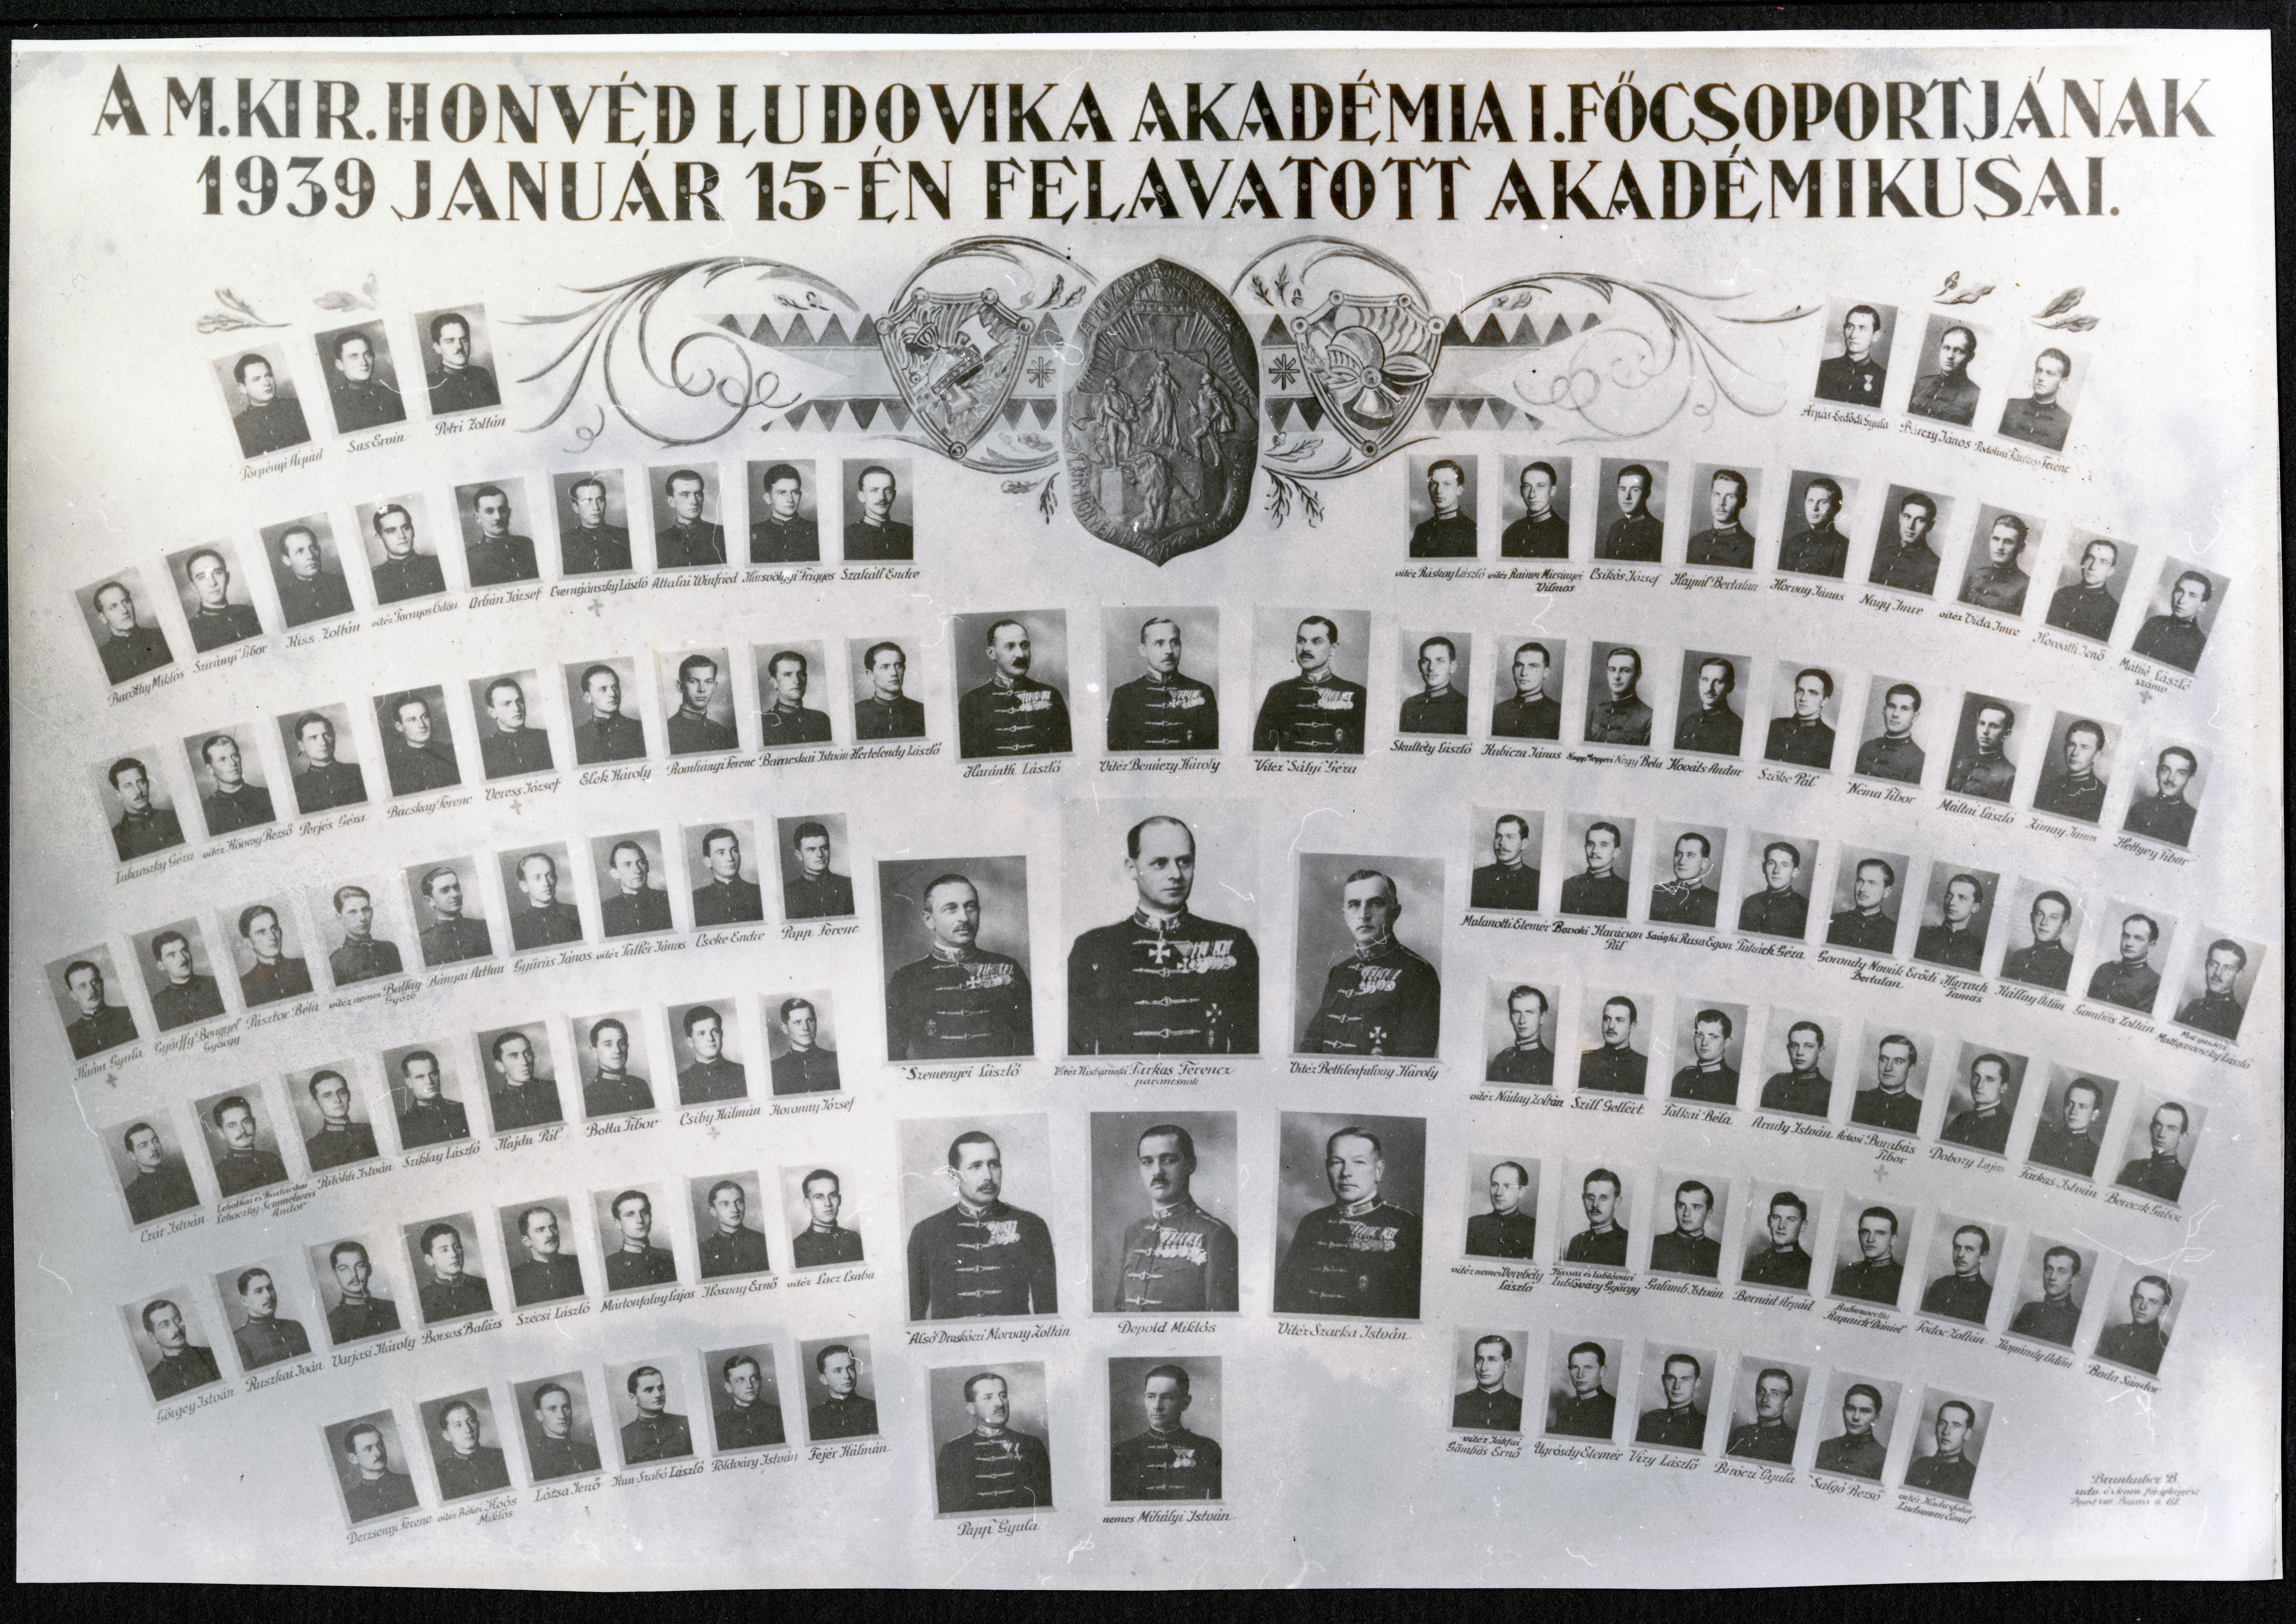 A M. Kir. Honvéd Ludovika Akadémia I. Főcsoportjának 1939 január 15-én felavatott akadémikusai